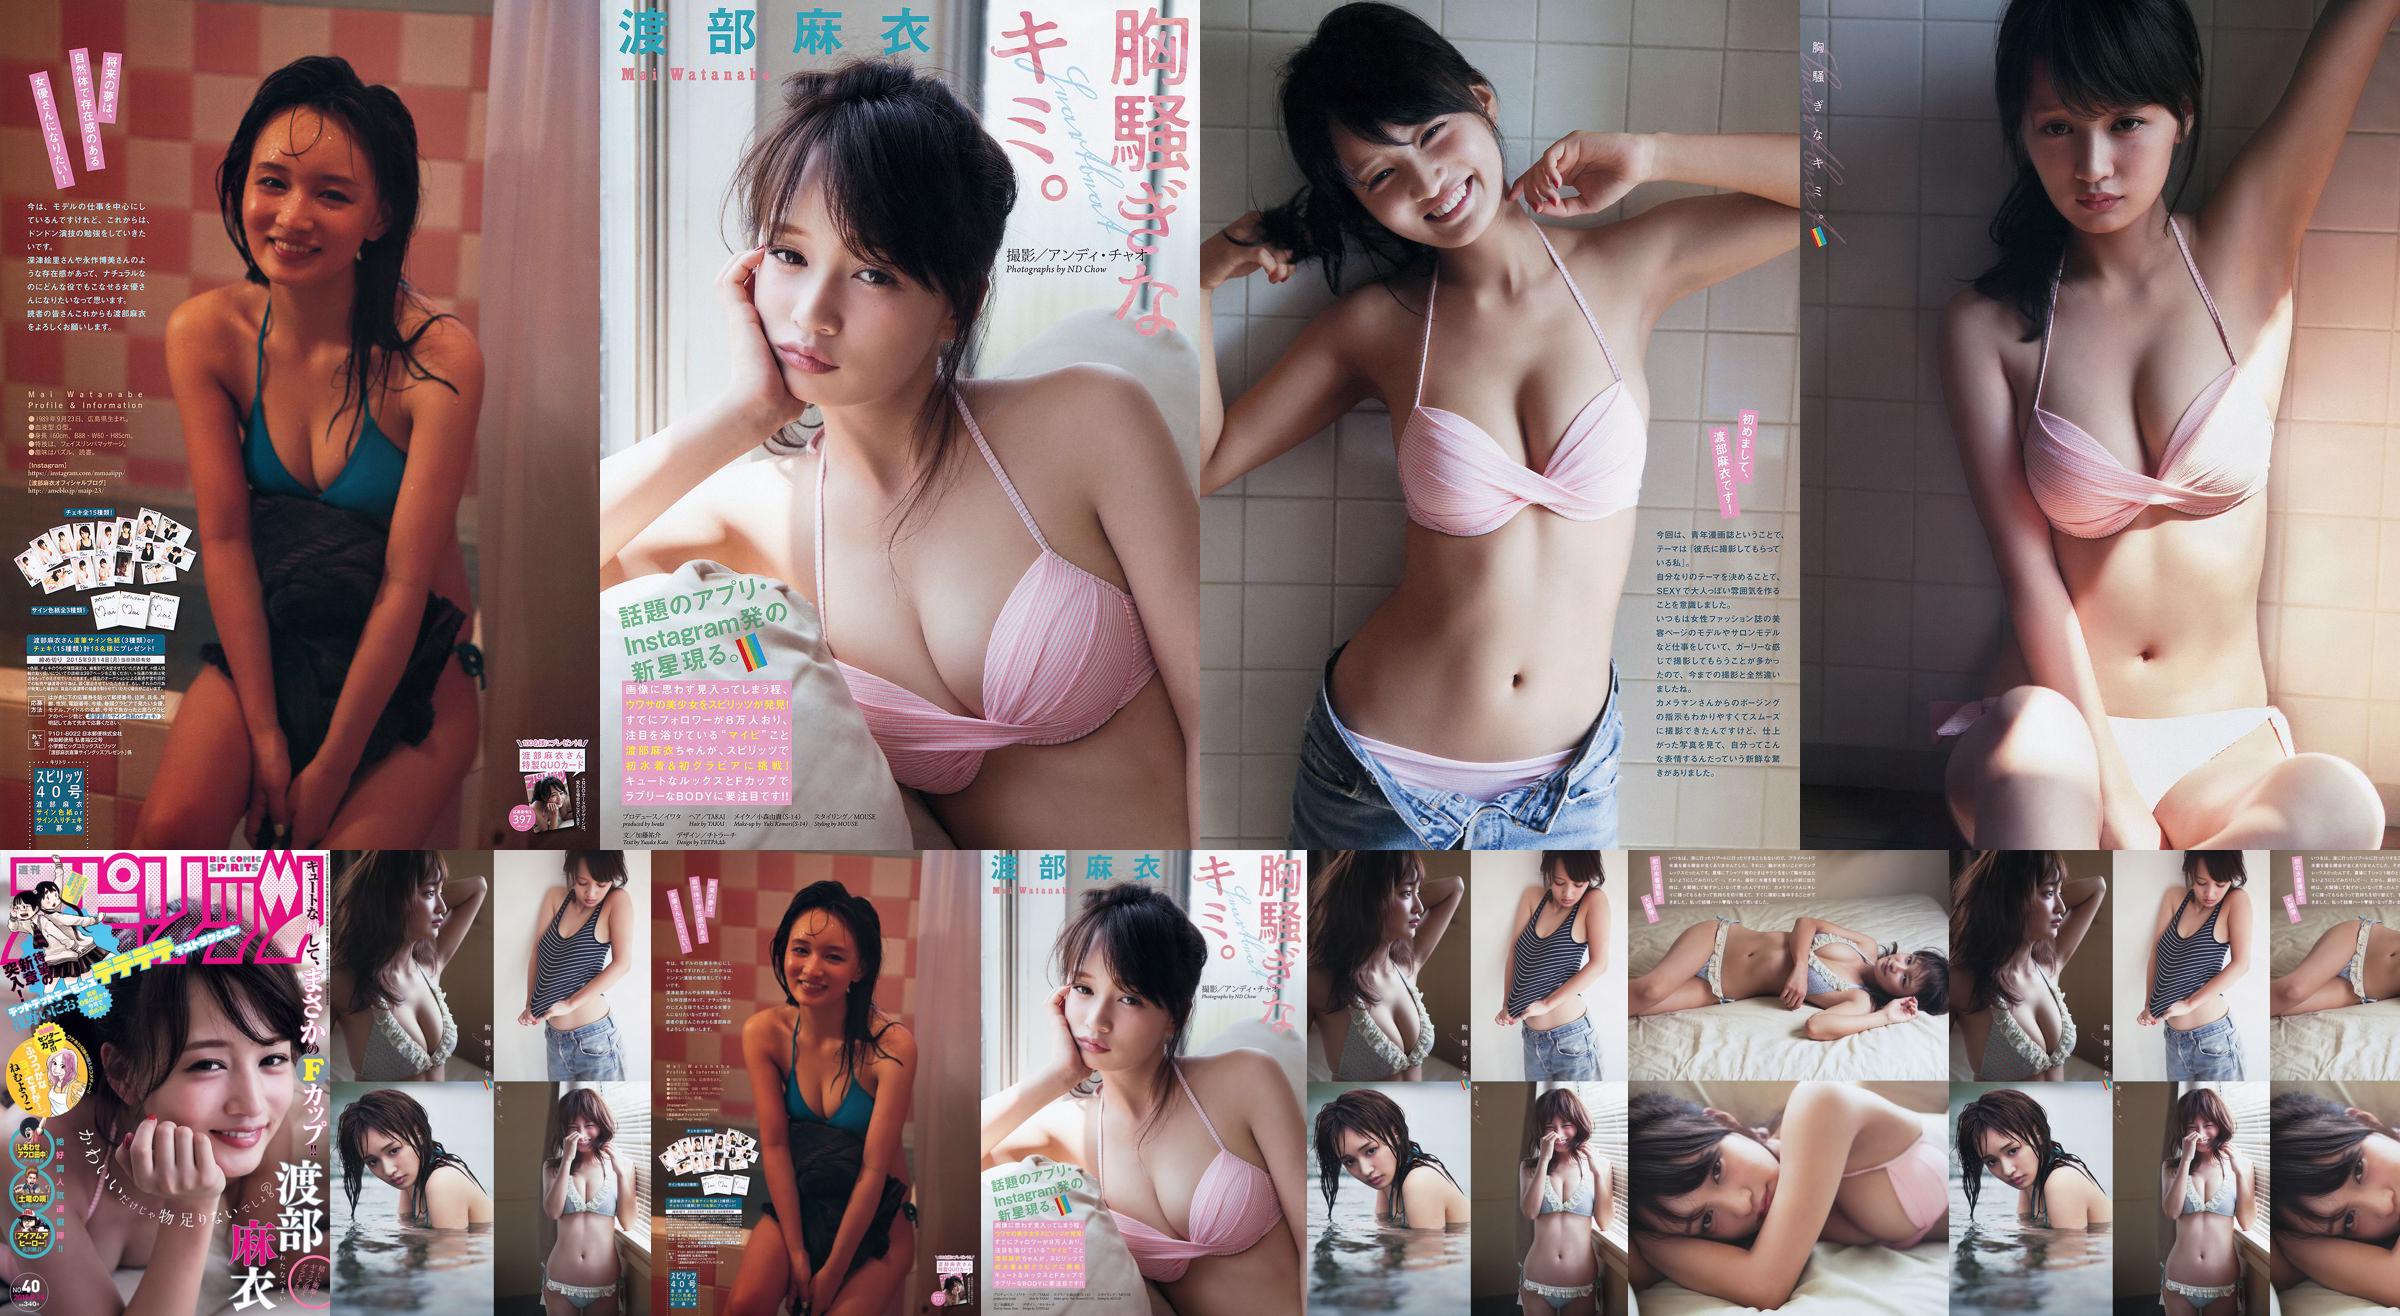 [Weekly Big Comic Spirits] Watanabe Mai 2015 No.40 Photo Magazine No.860e25 Страница 1